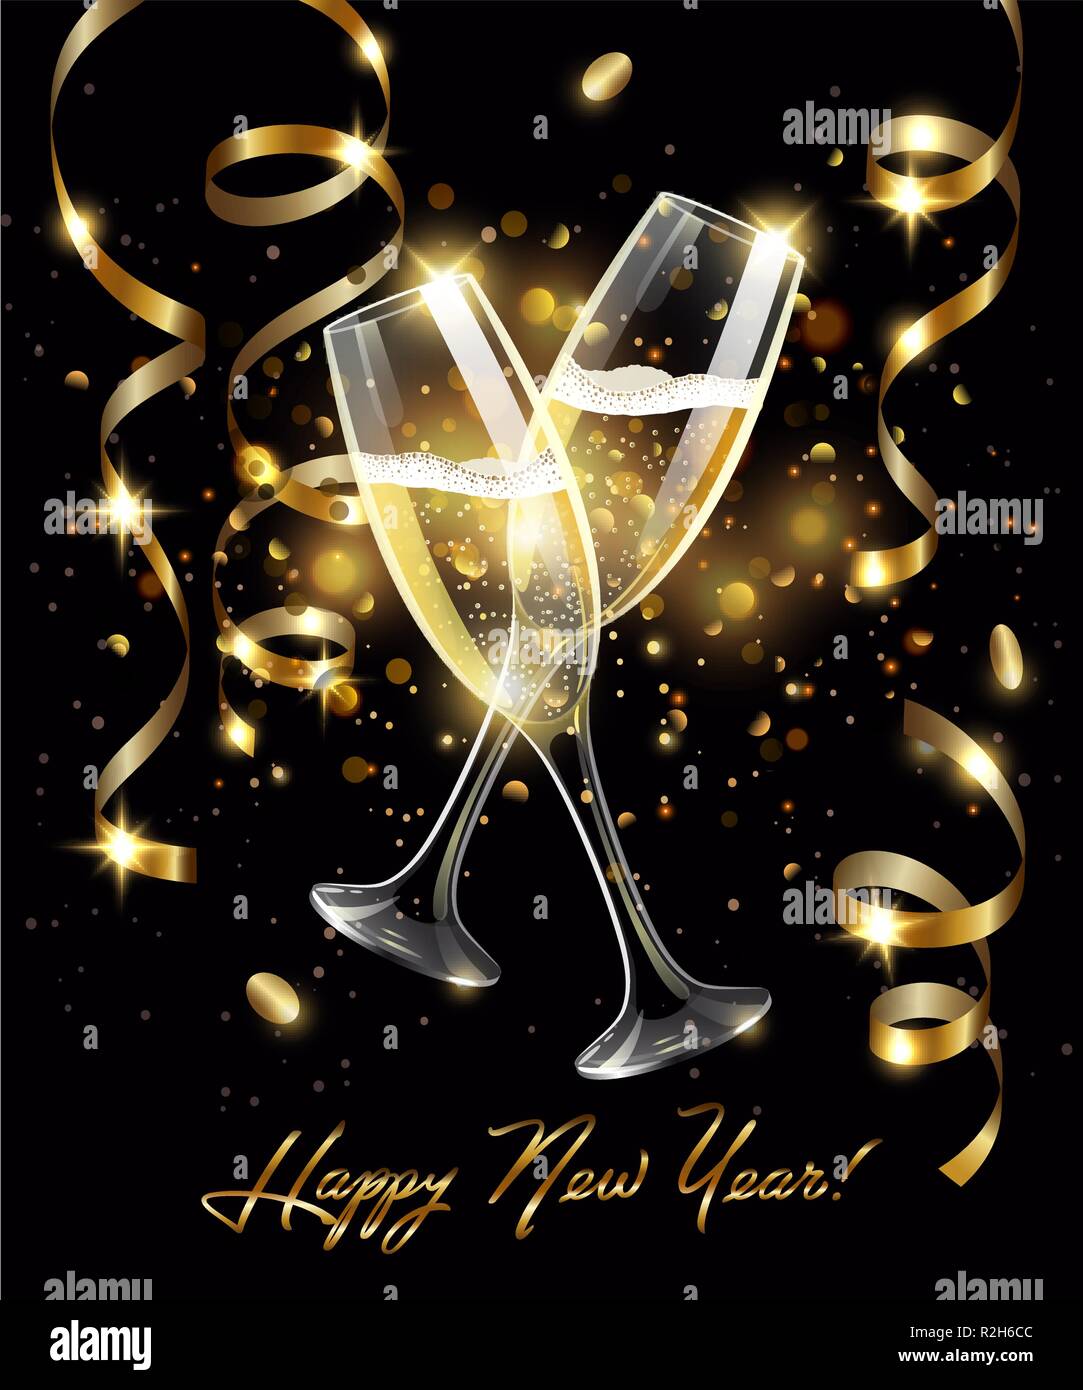 Vini spumanti di bicchieri di champagne con serpentina in oro su sfondo nero, effetto bokeh di fondo con segno Felice Anno Nuovo Illustrazione Vettoriale